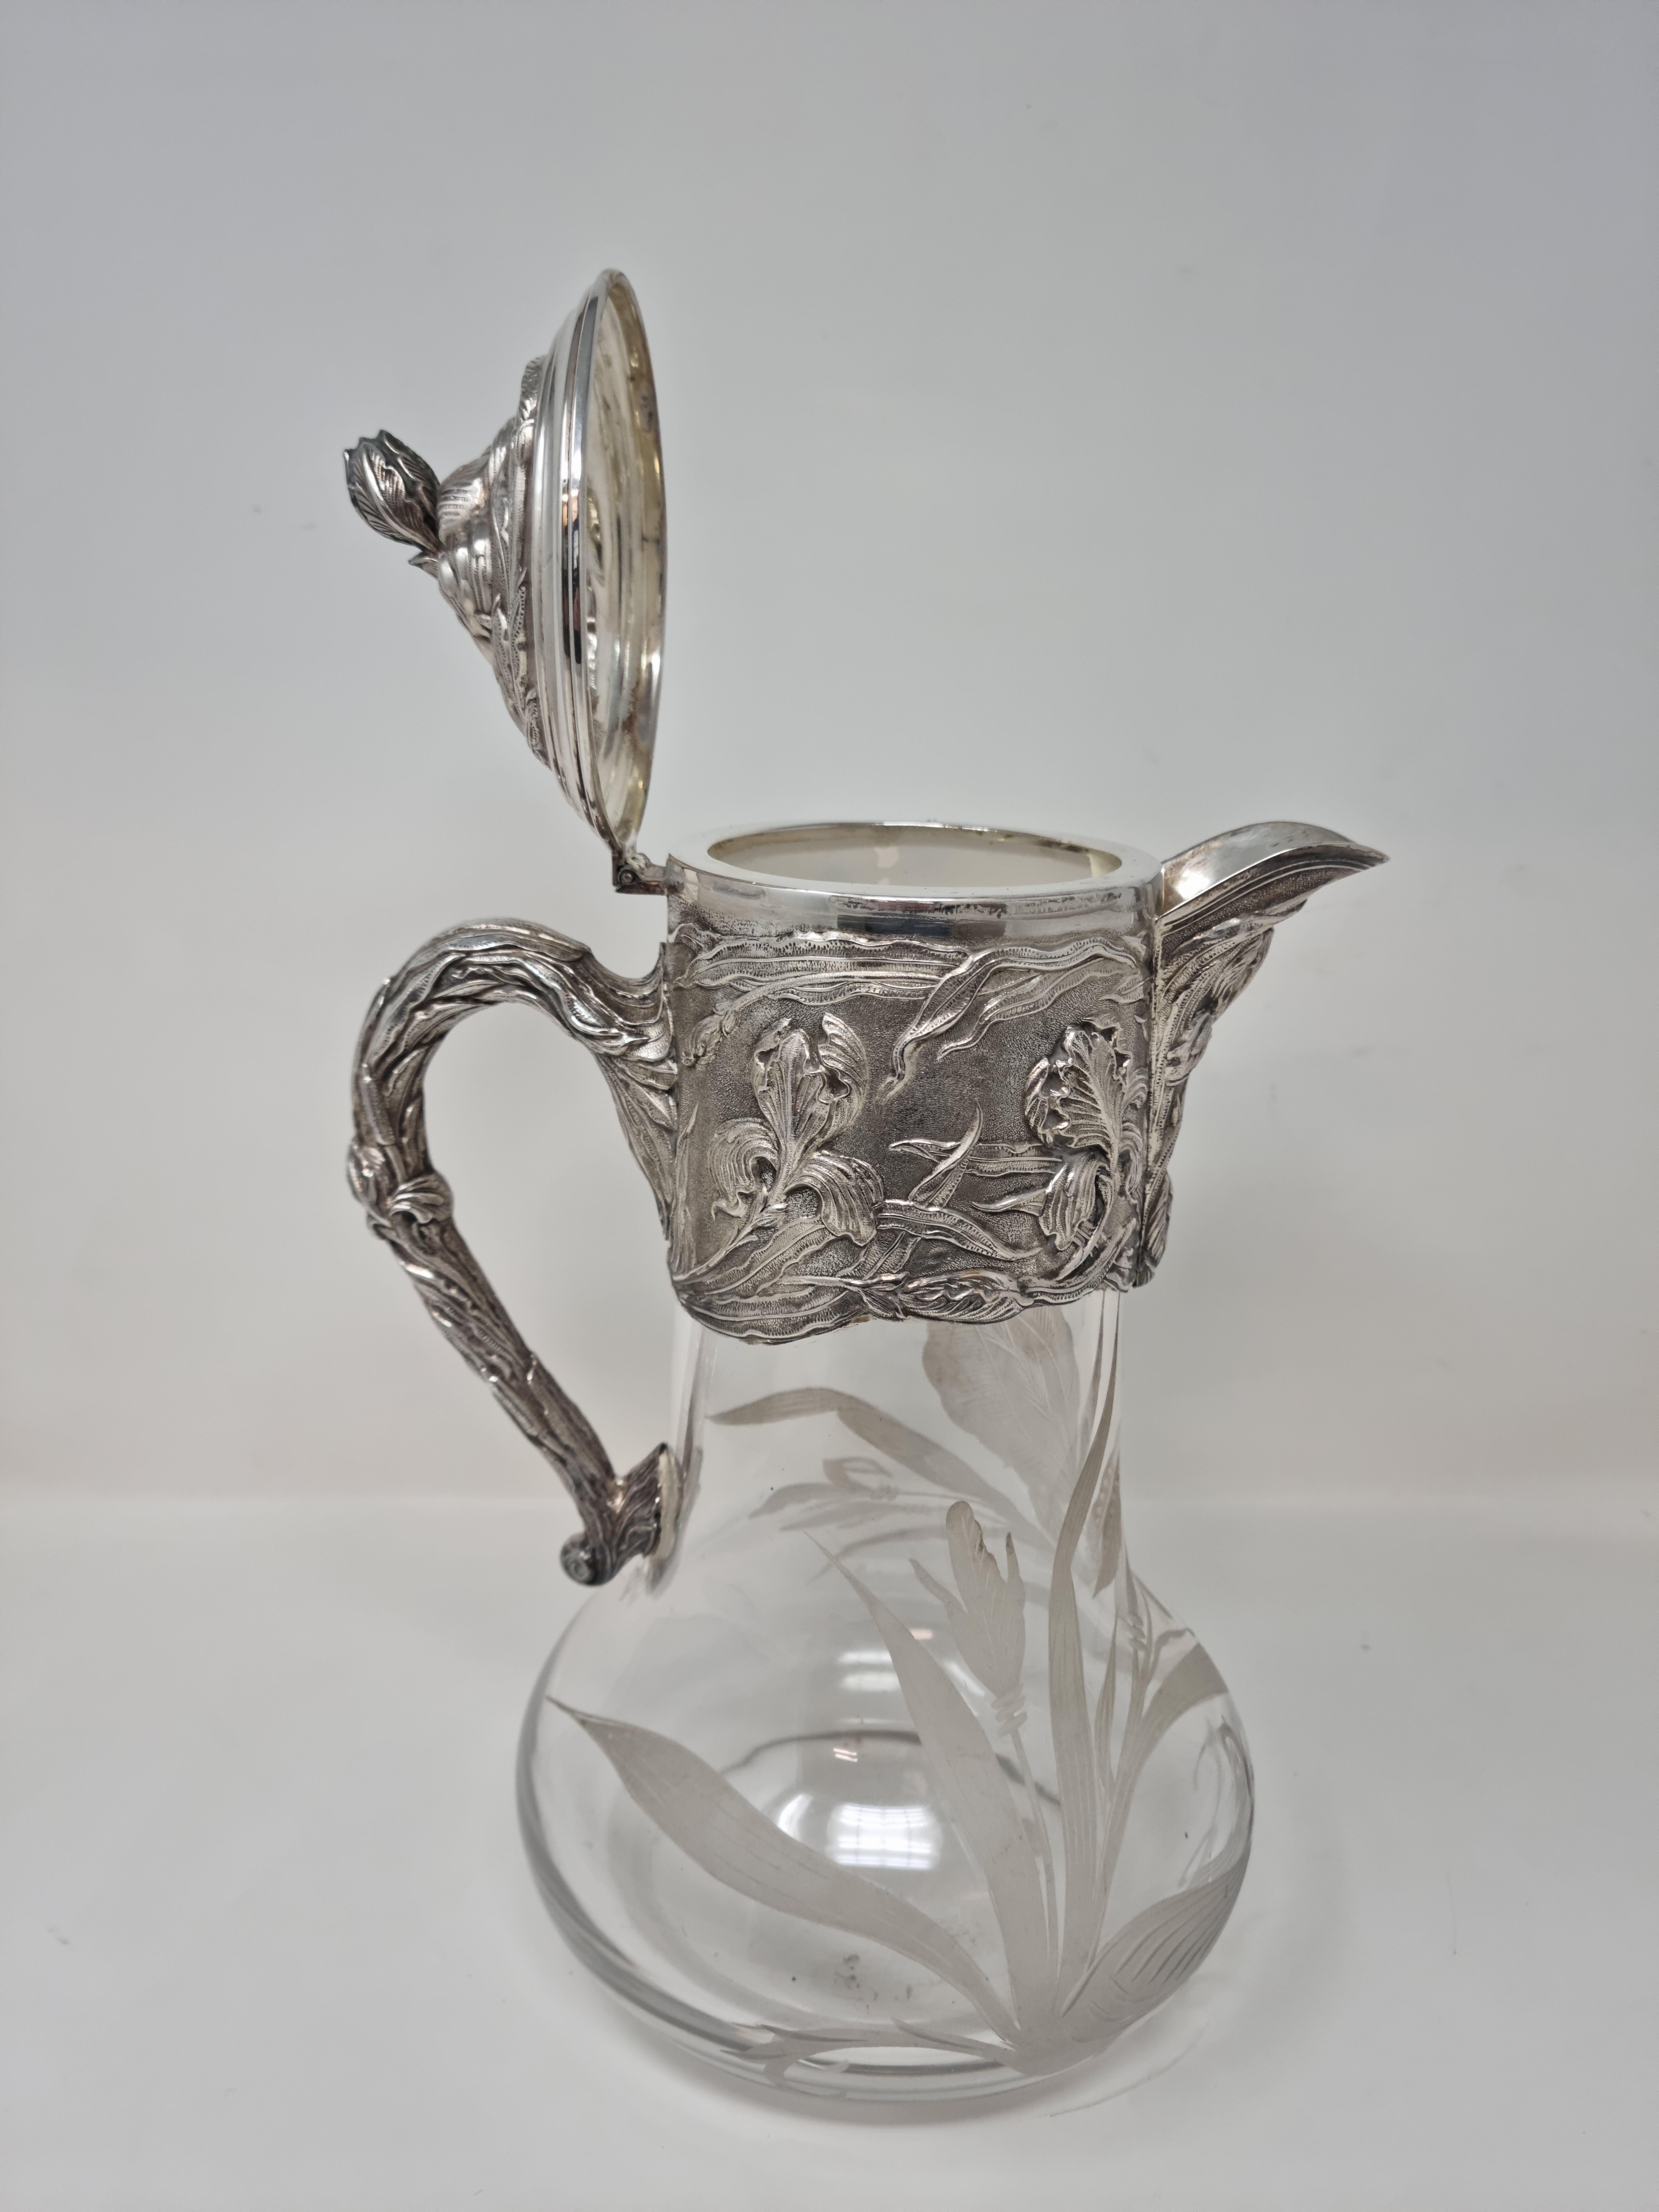 1909 Silver and Acid-Etched Crystal Claret Jug 'Wine Jug' For Sale 1